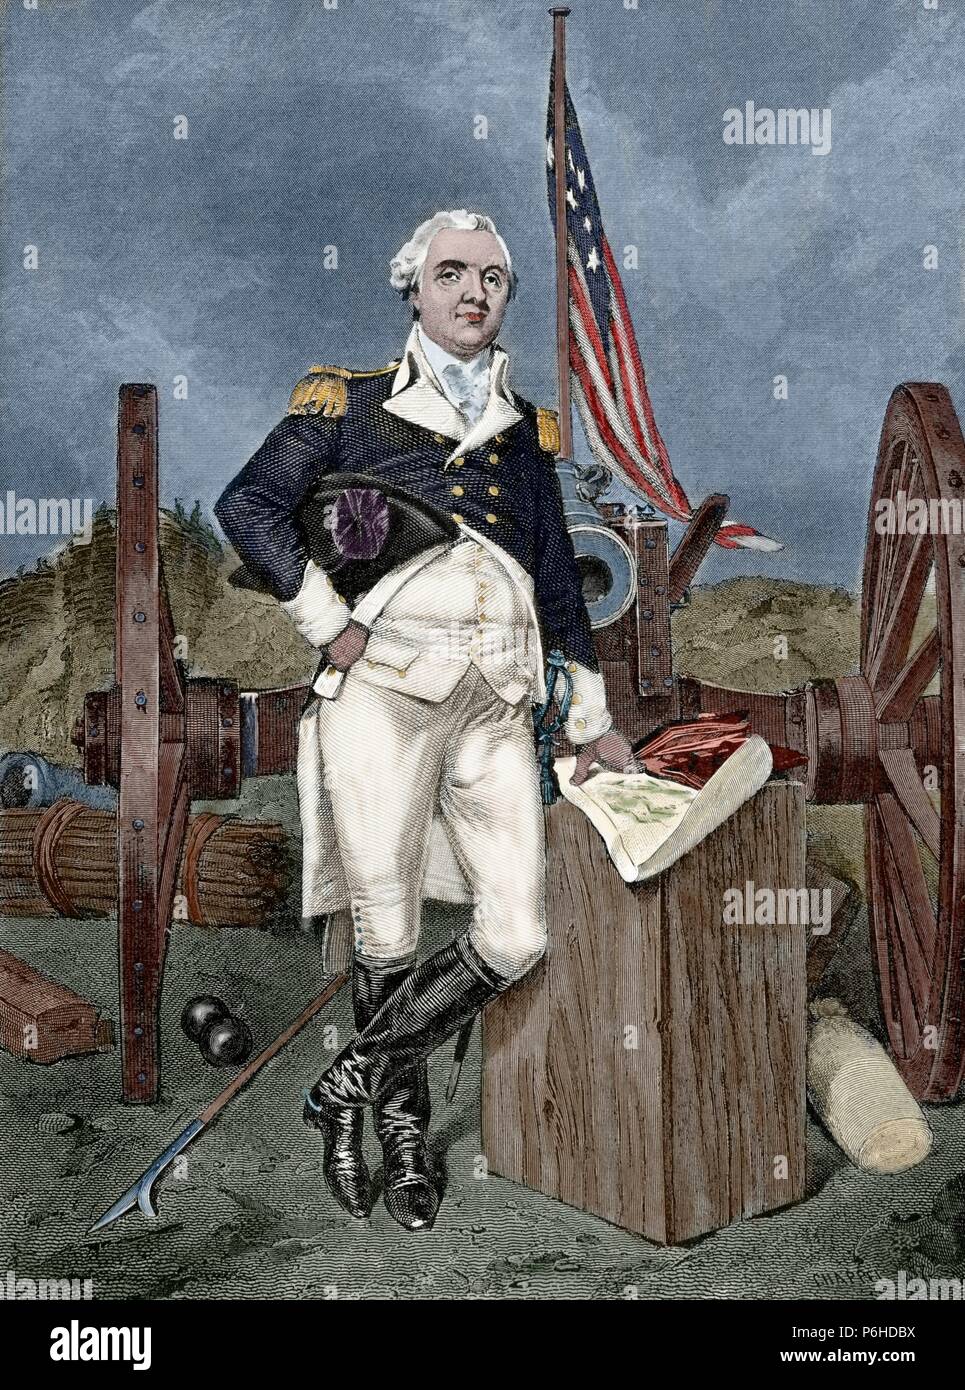 Henry Wissen (1750-1806). Offizier der Kontinentalen Armee und später der United States Army. Gravur. Amerikanischer Unabhängigkeitskrieg. 18. Gefärbt. Stockfoto